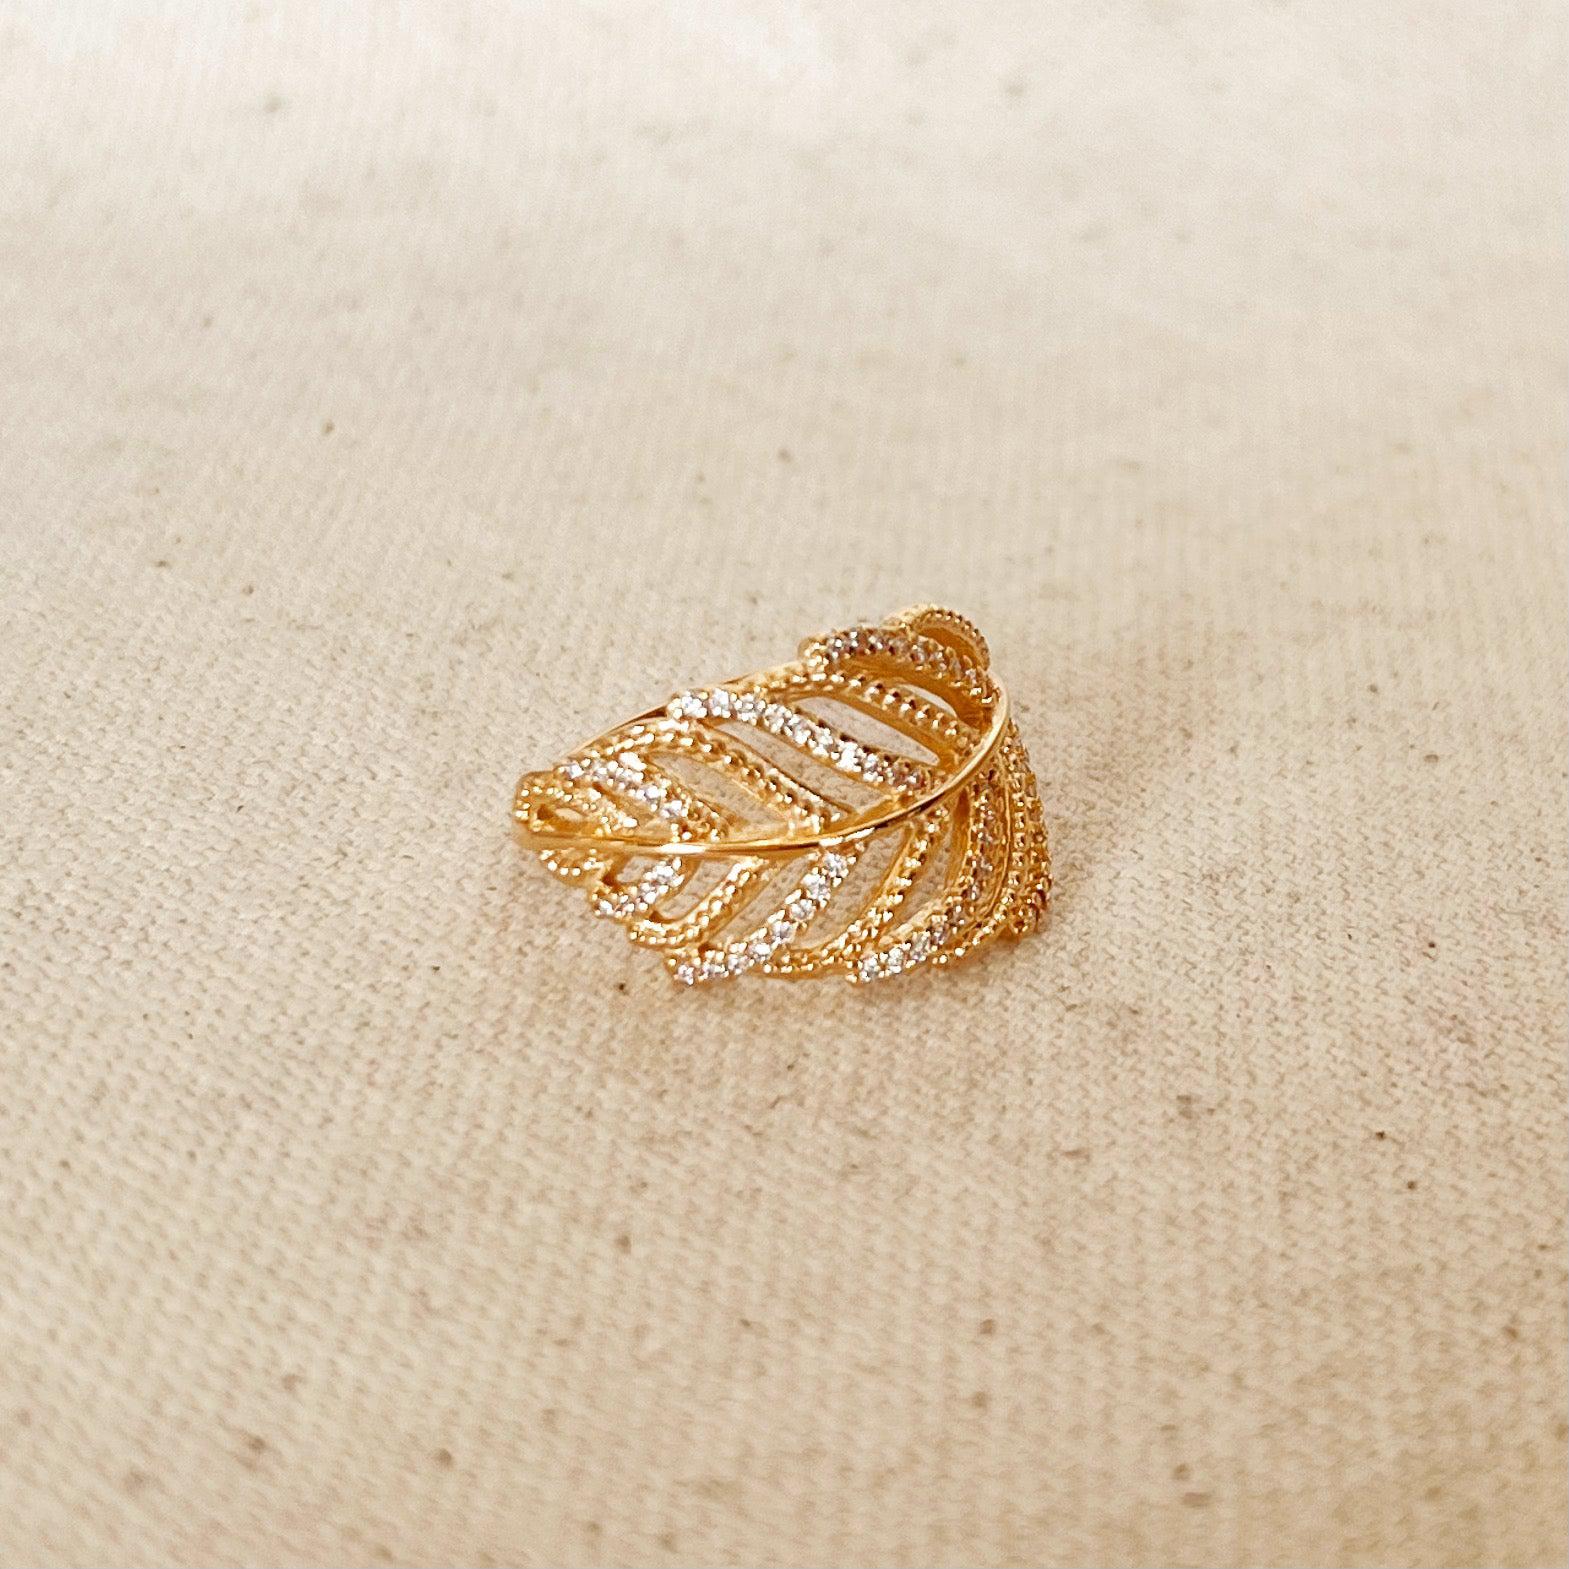 GoldFi 18k Gold Filled Statement Leaf Ring